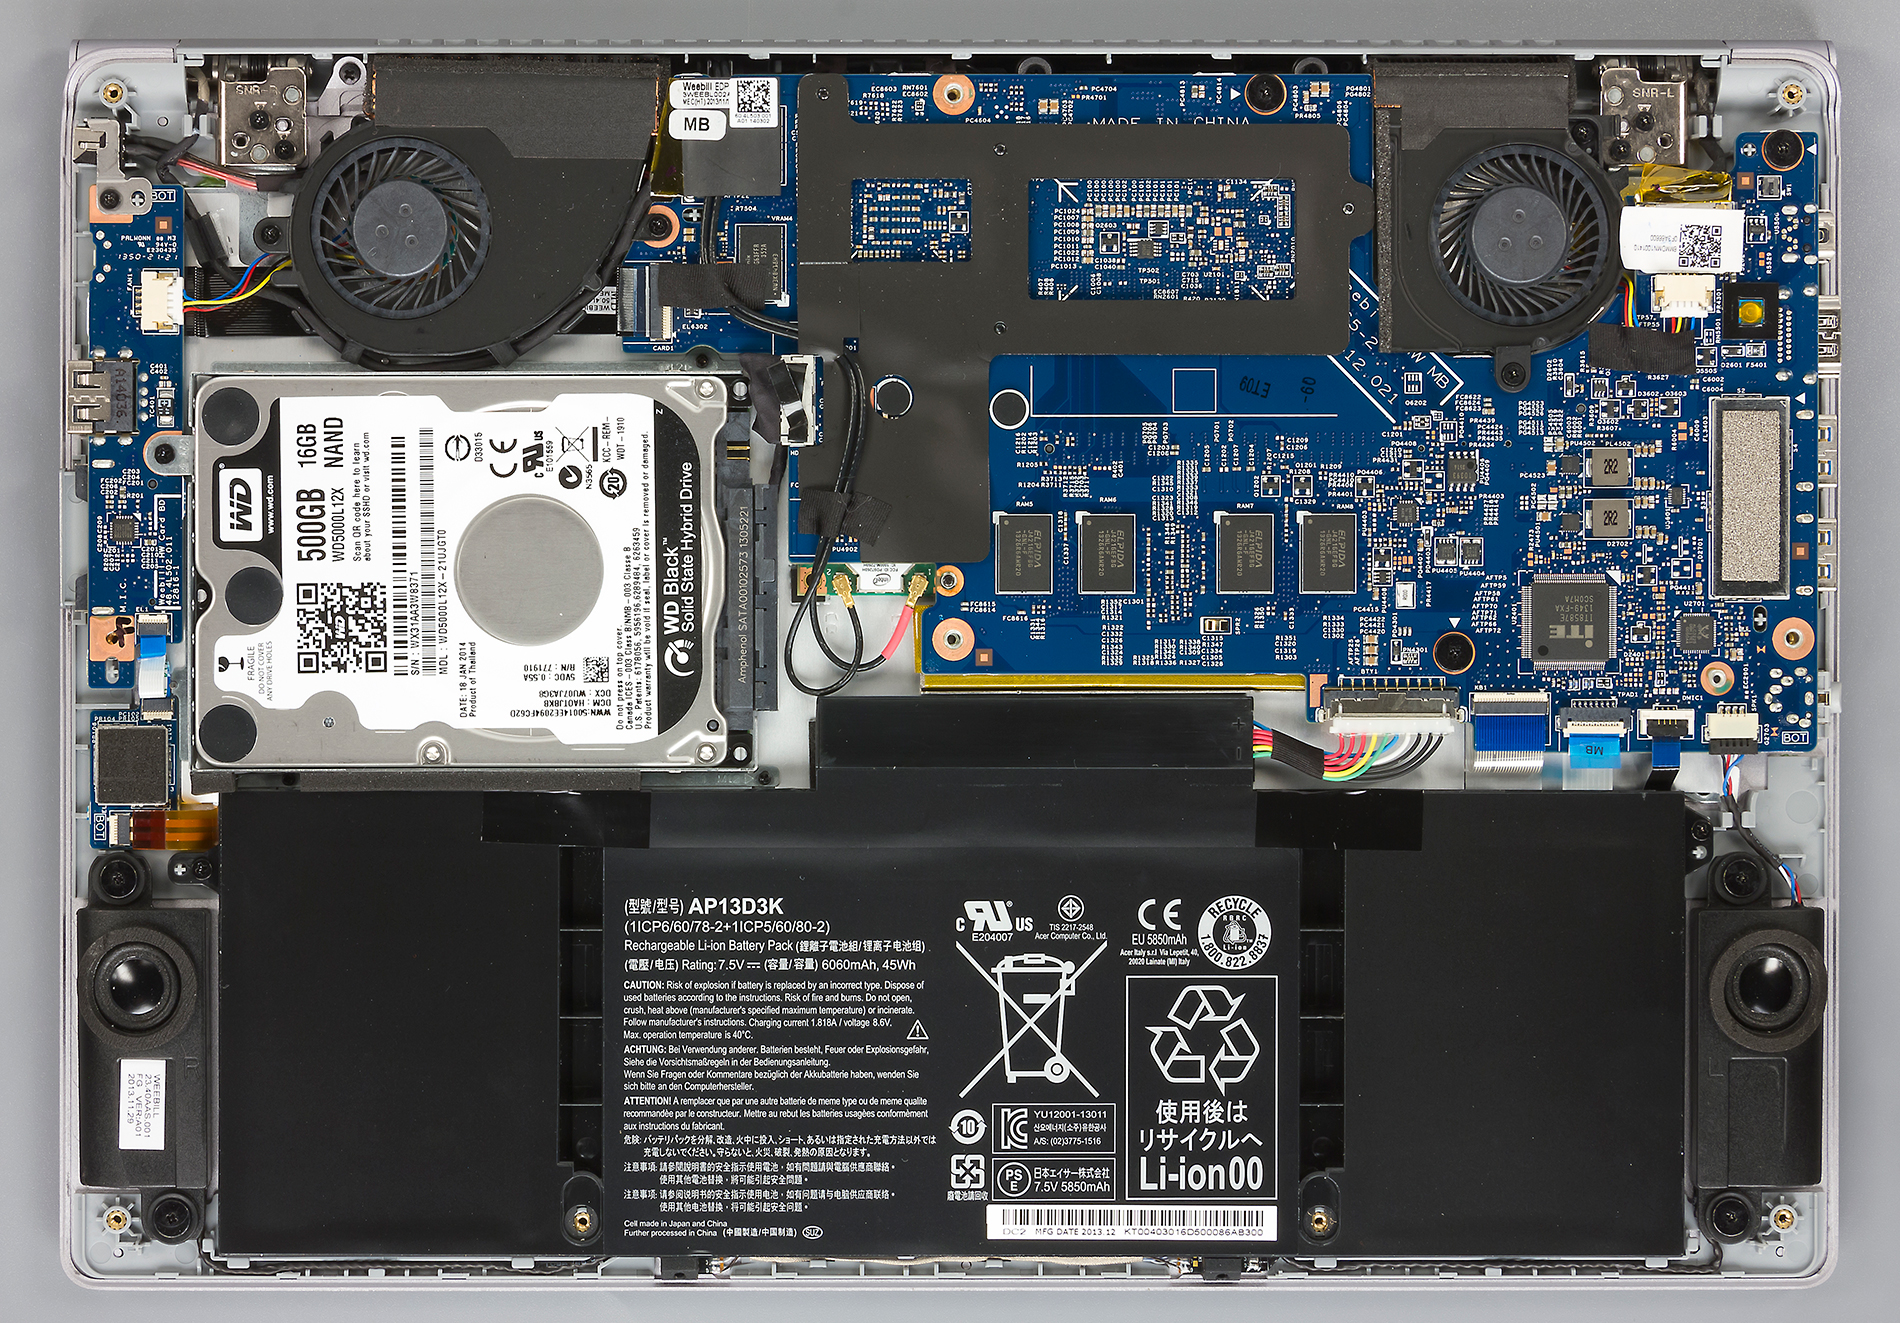 Полный обзор Acer Aspire S7-392 Intel Core i7 4500U, Intel HD Graphics 4400, 133 дюйма, 13 Кг с измерениями, бенчмарками и рейтингами